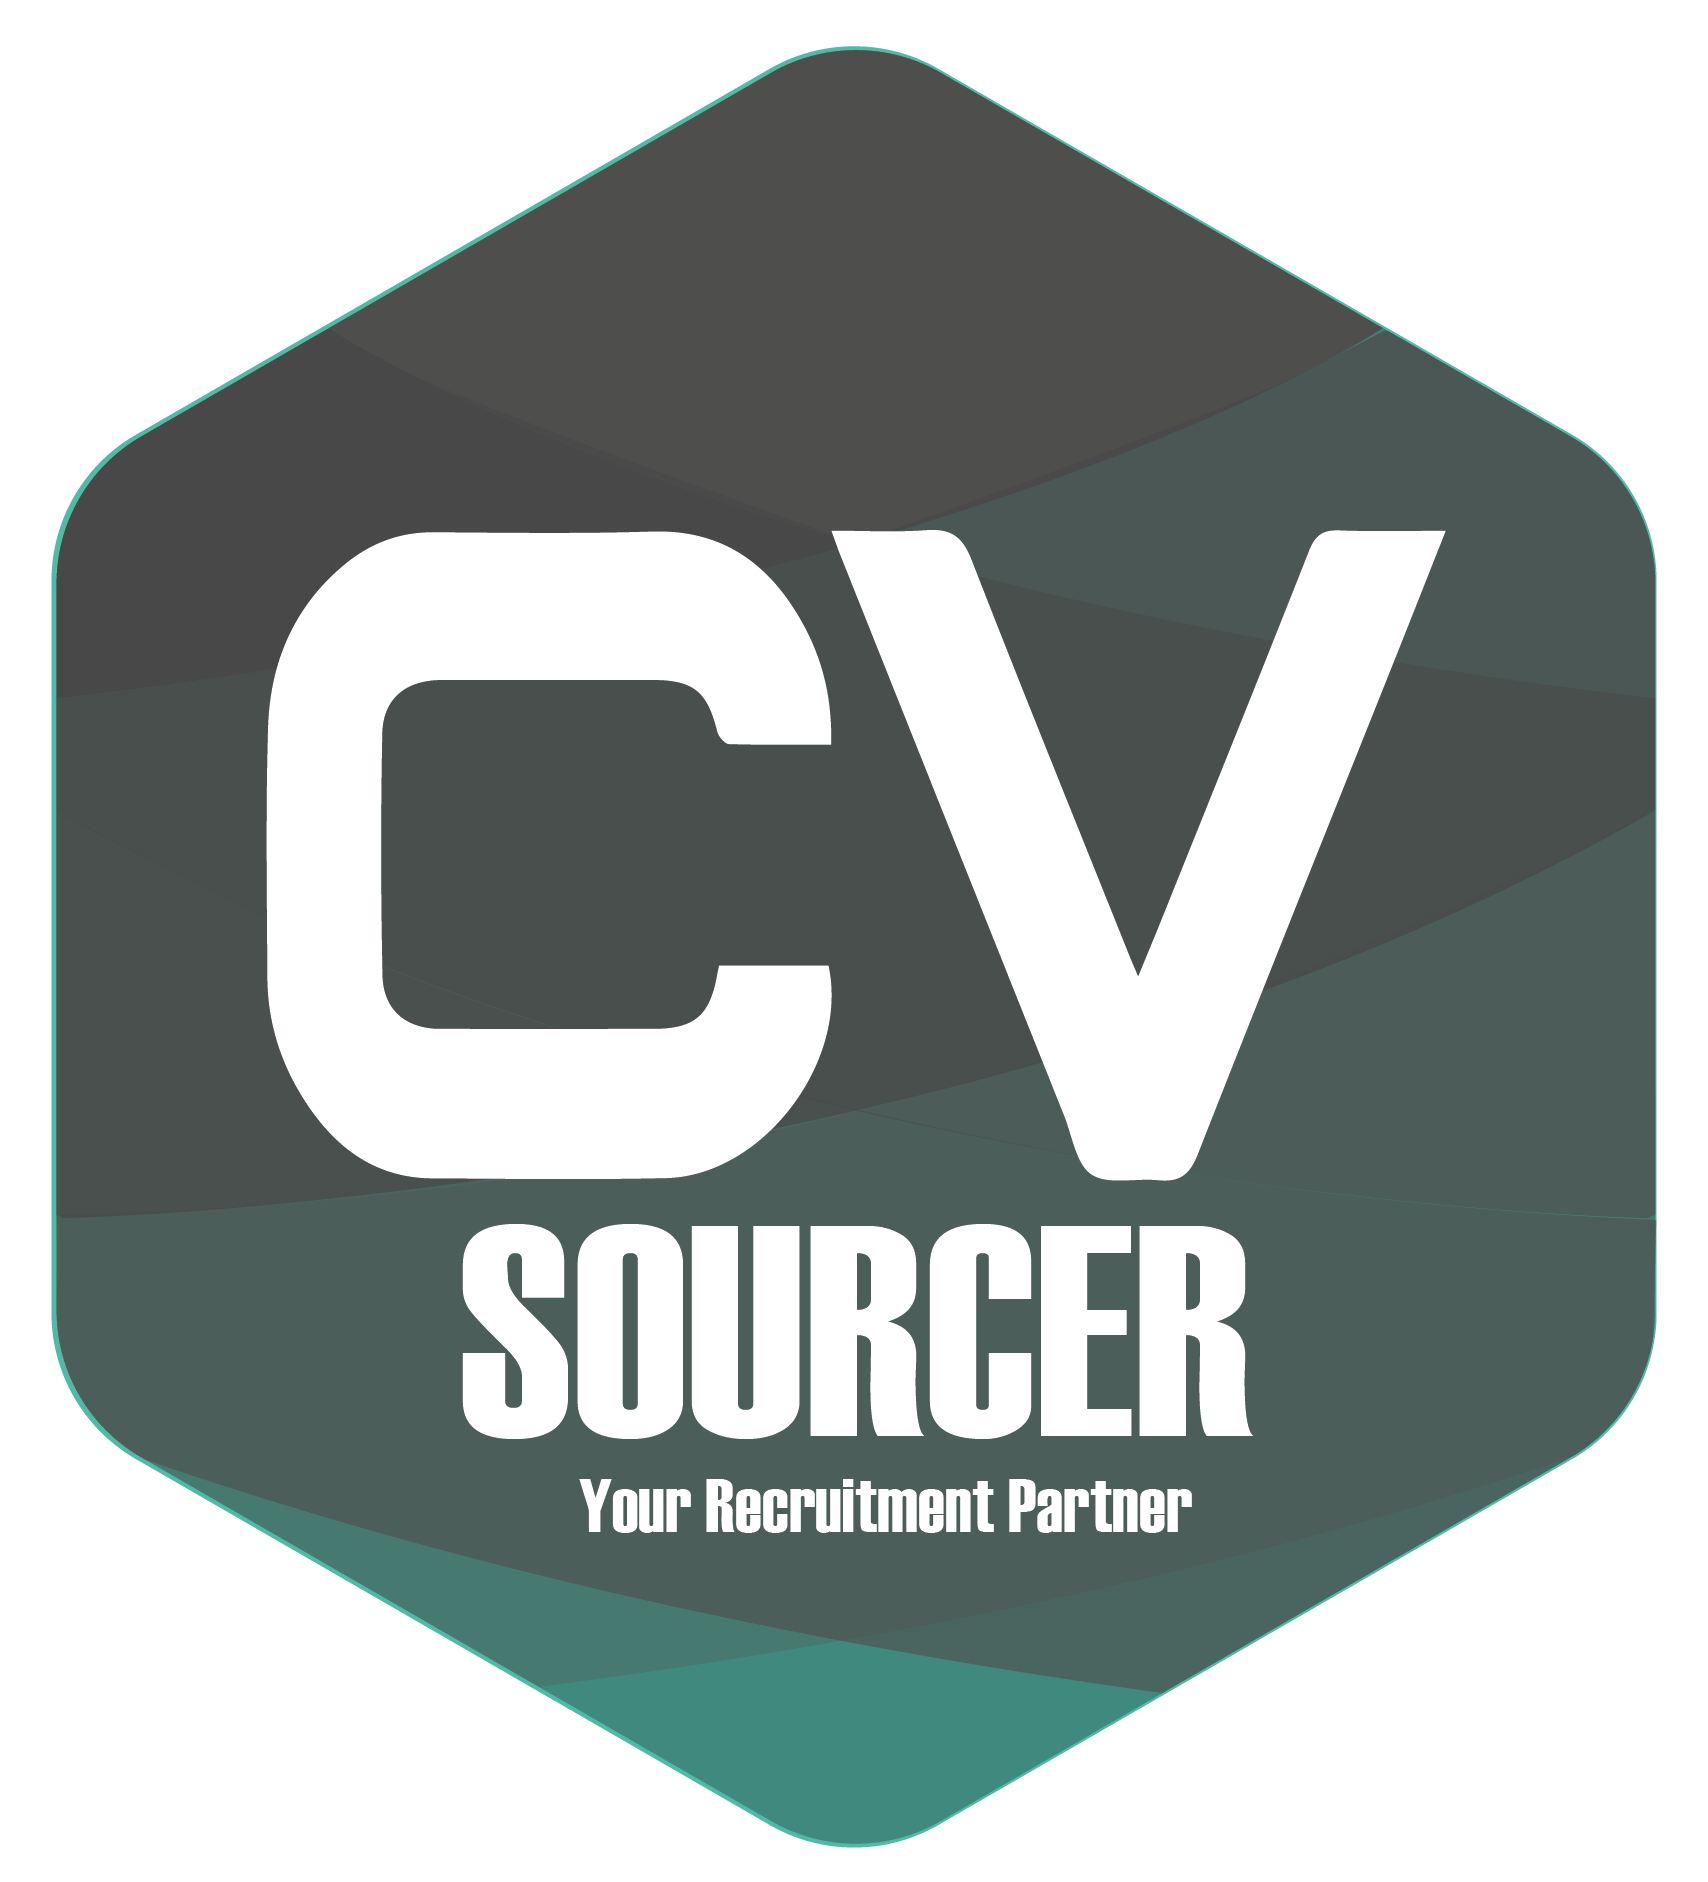 CV Sourcer